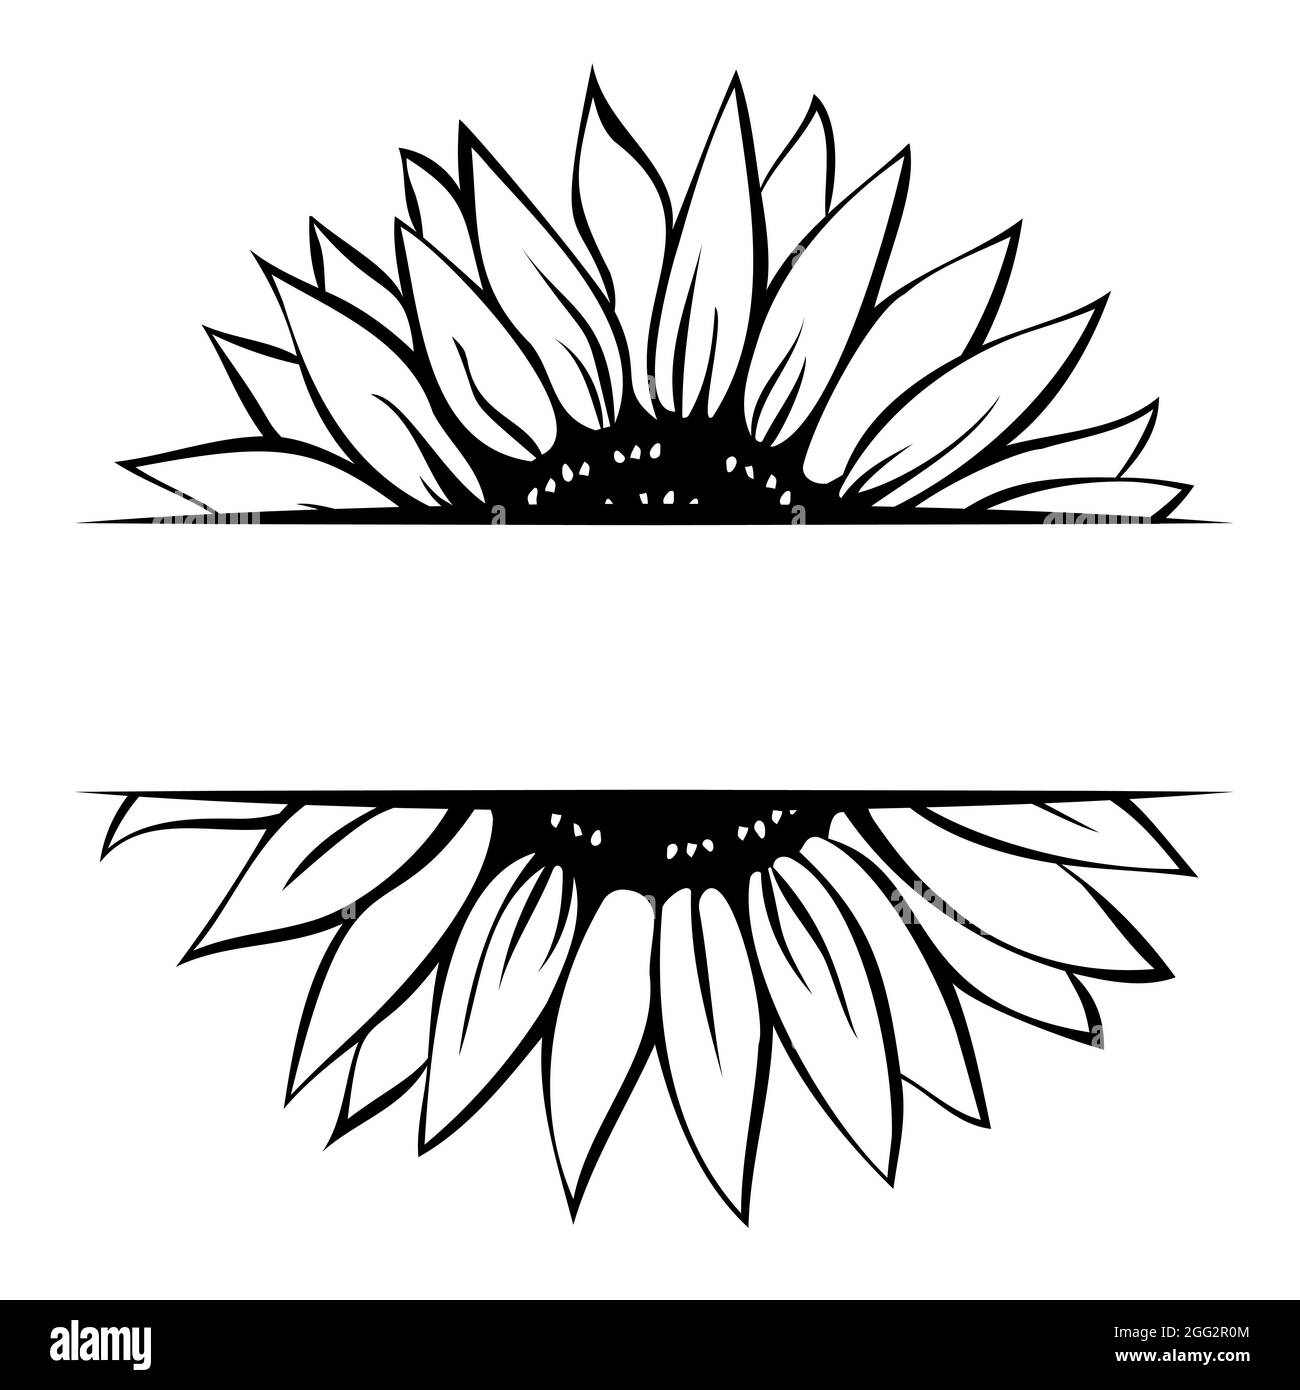 Silueta de girasol Imágenes de stock en blanco y negro - Alamy